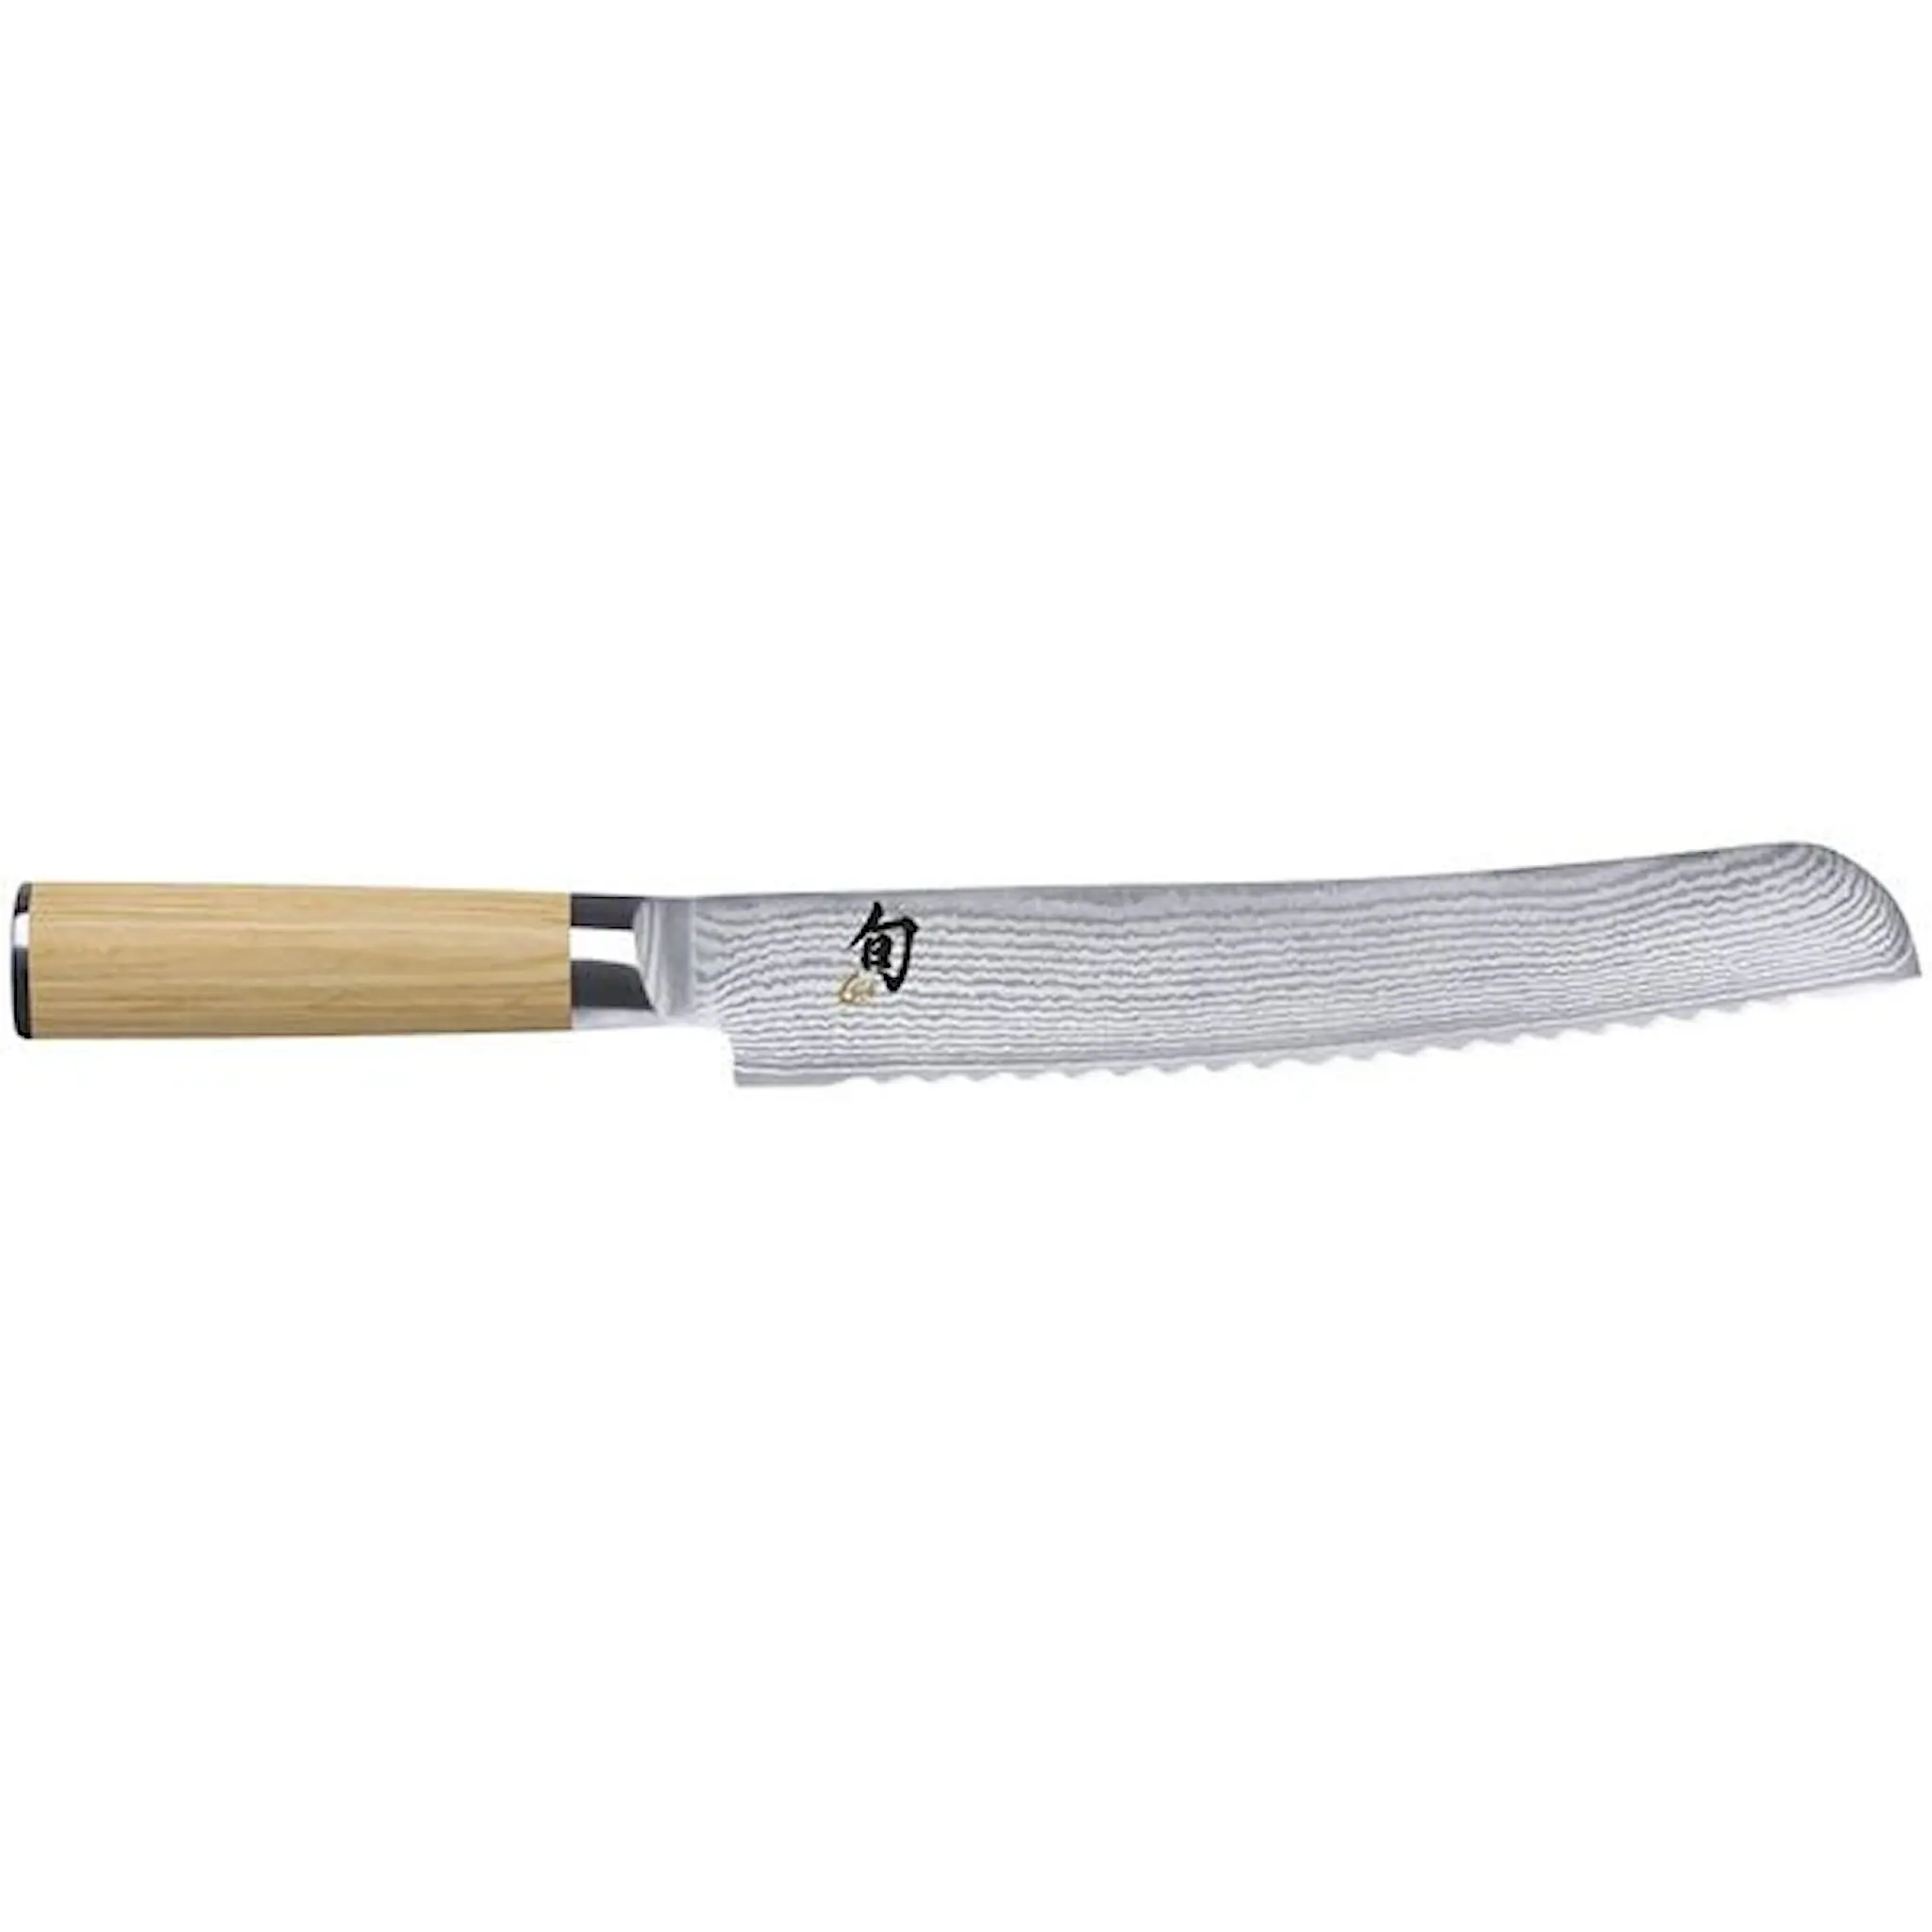 KAI Shun Classic White Brödkniv 23 cm Rostfri